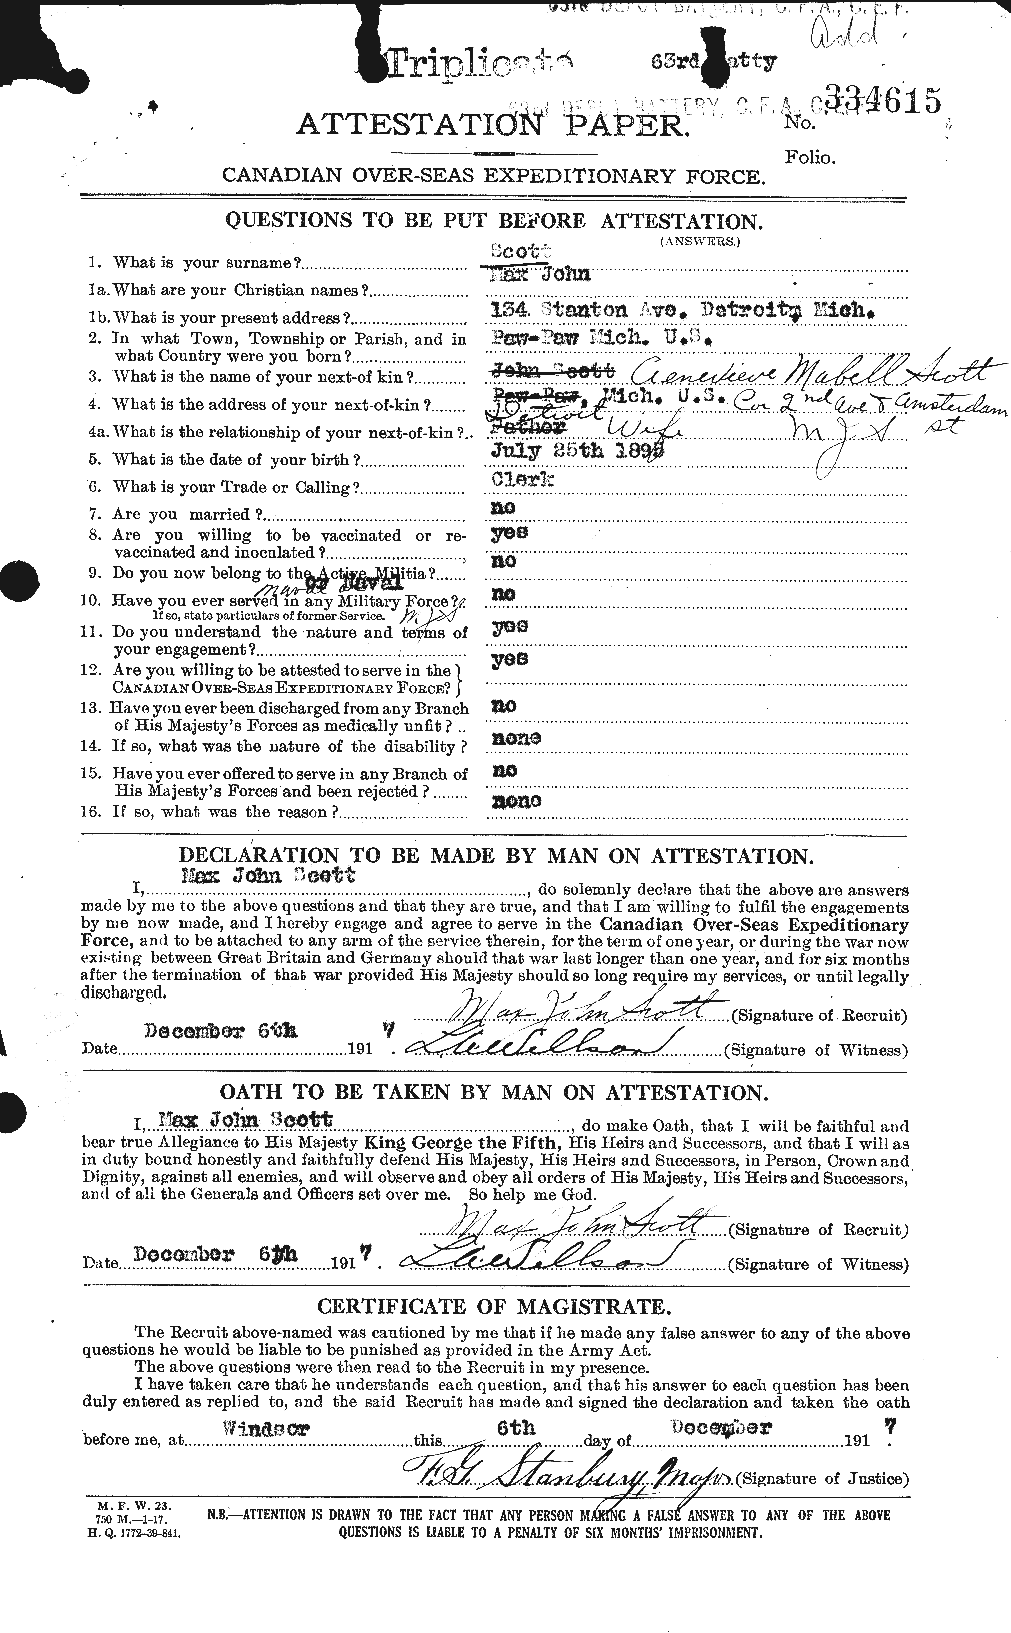 Dossiers du Personnel de la Première Guerre mondiale - CEC 083501a